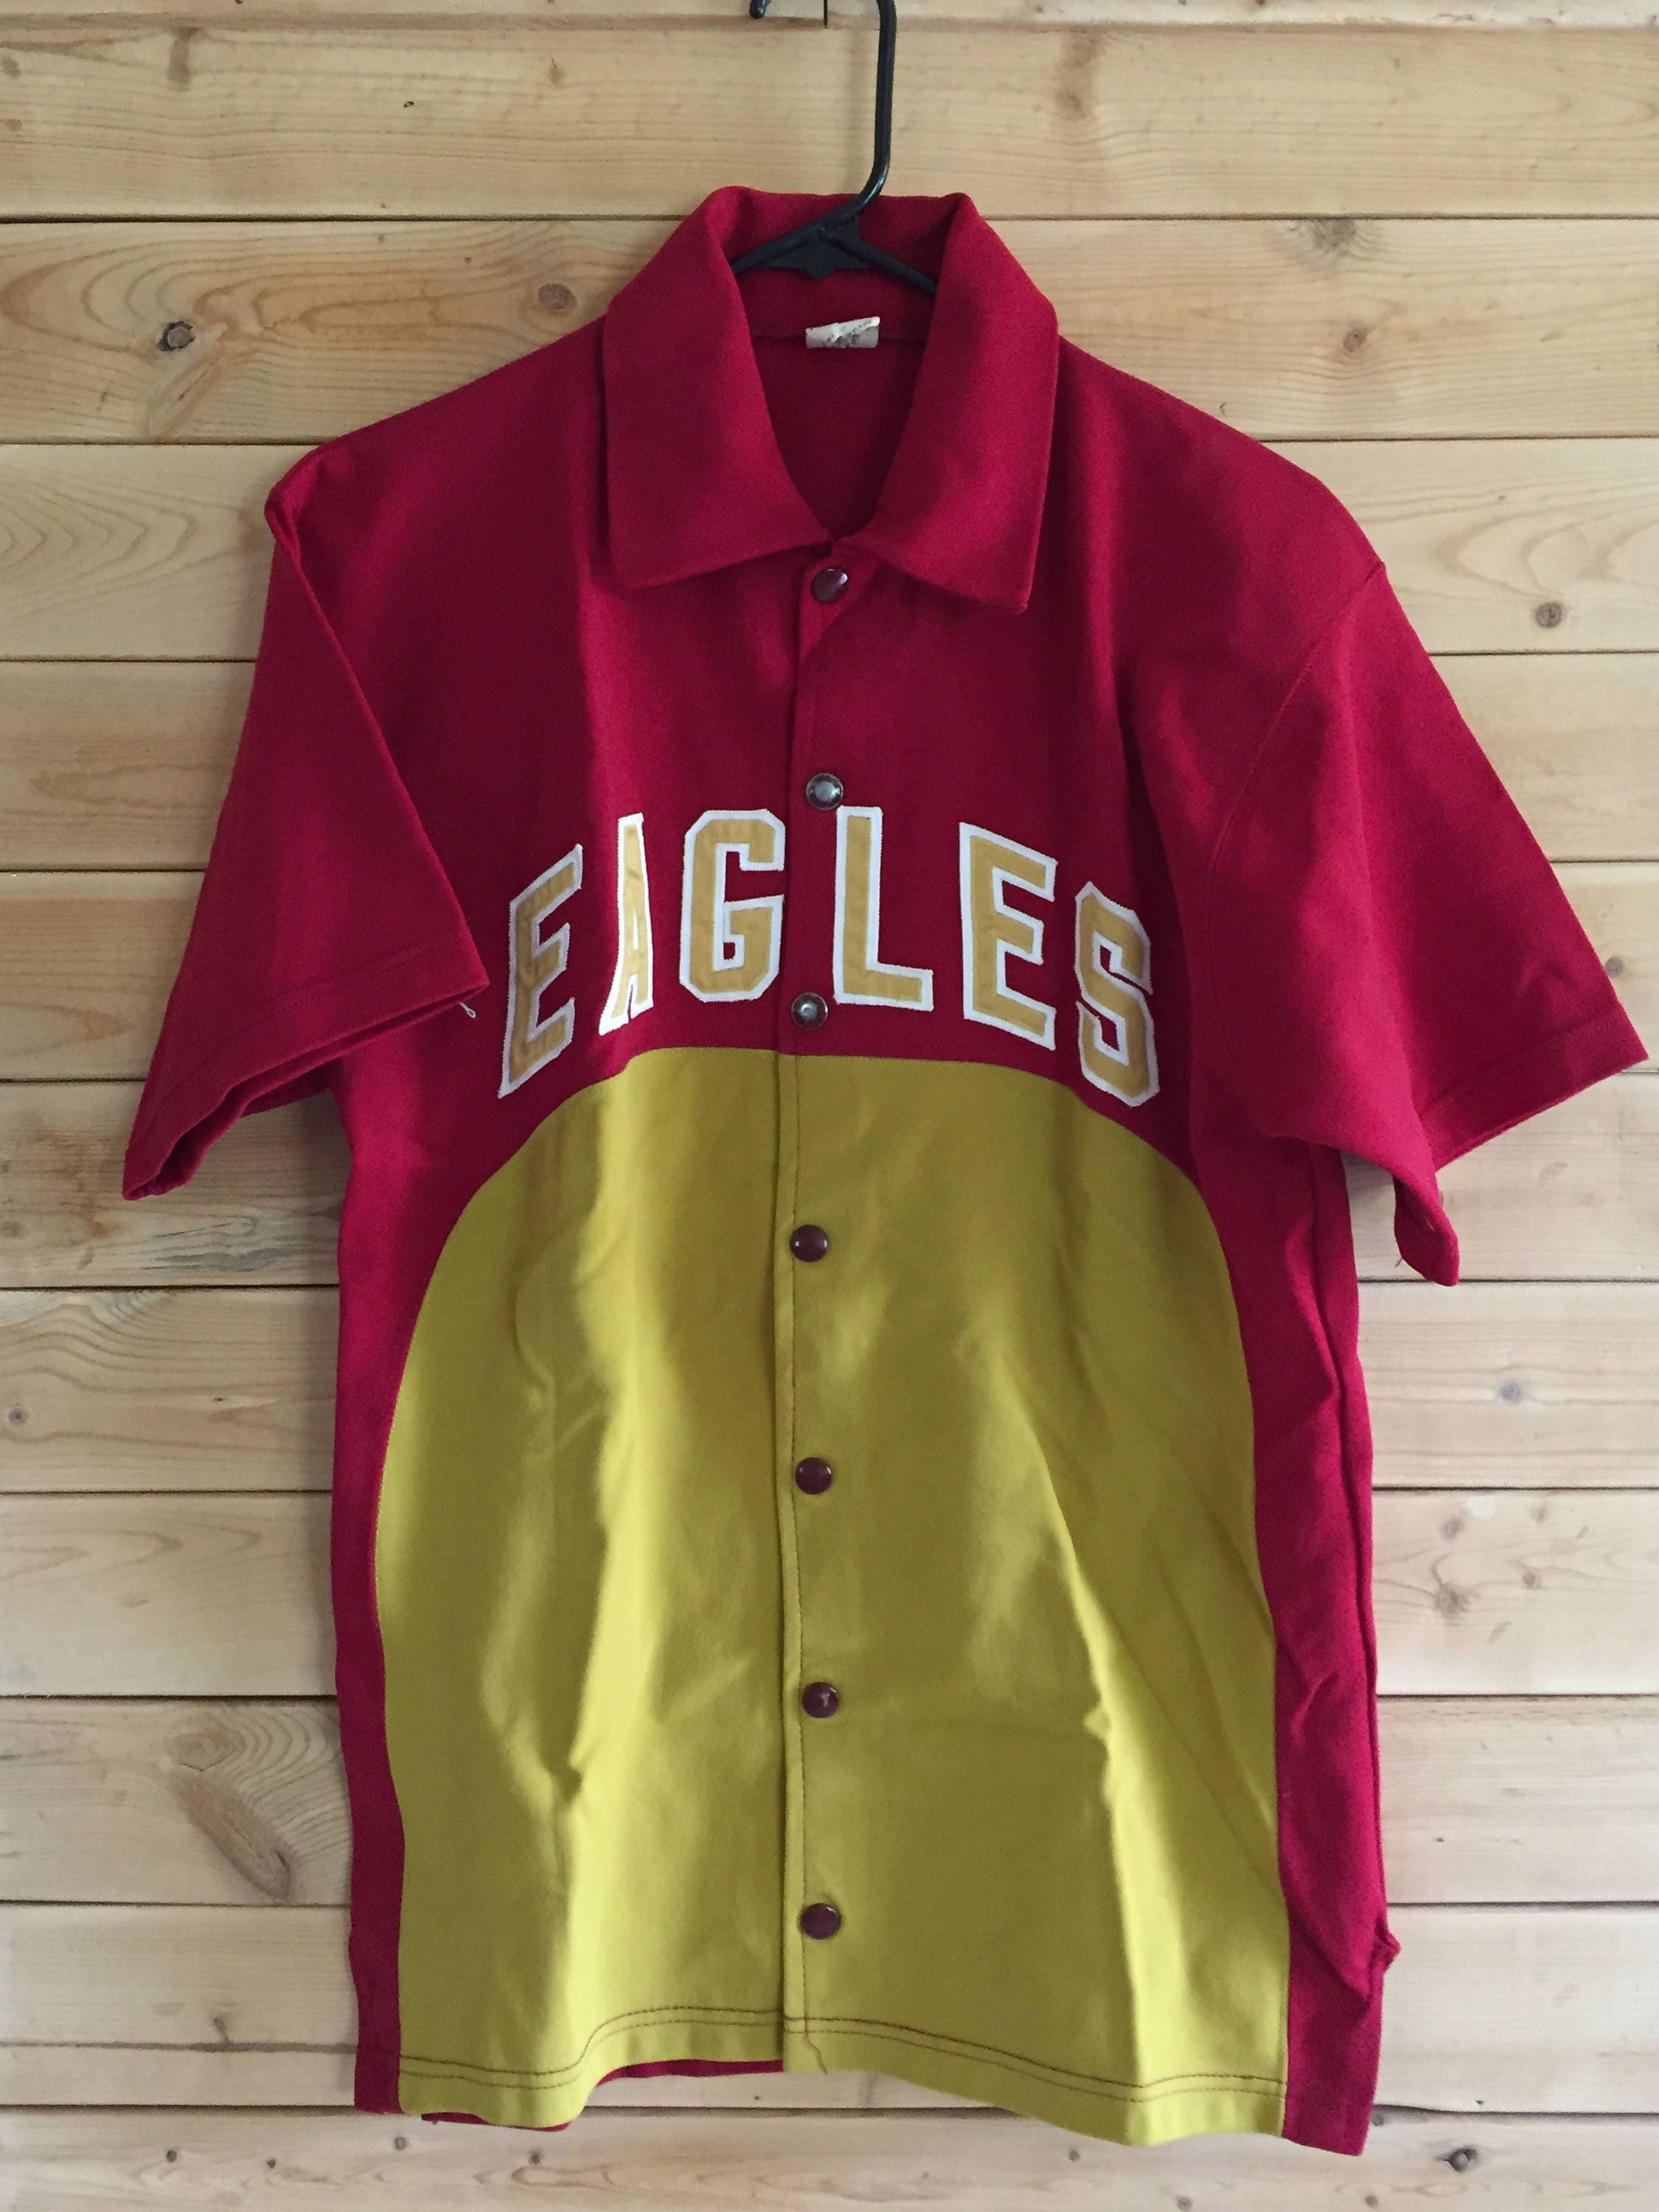 vintage eagles shirt